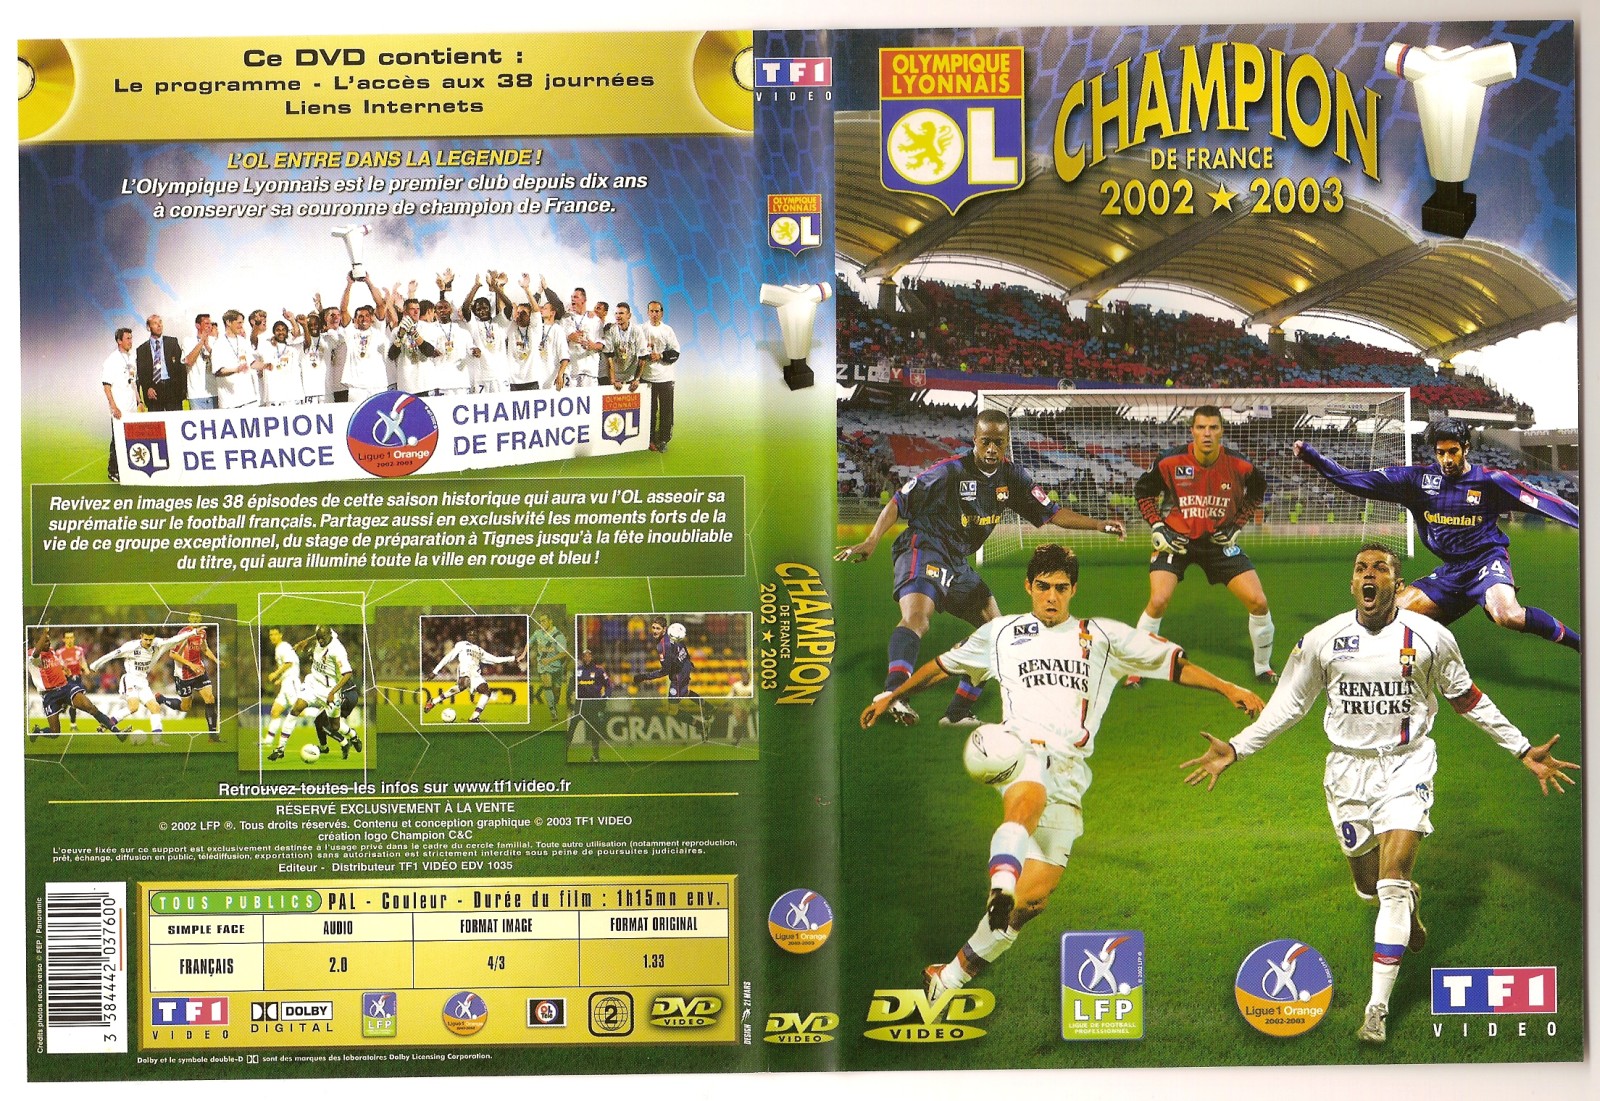 Jaquette DVD Champion de france 2002-2003